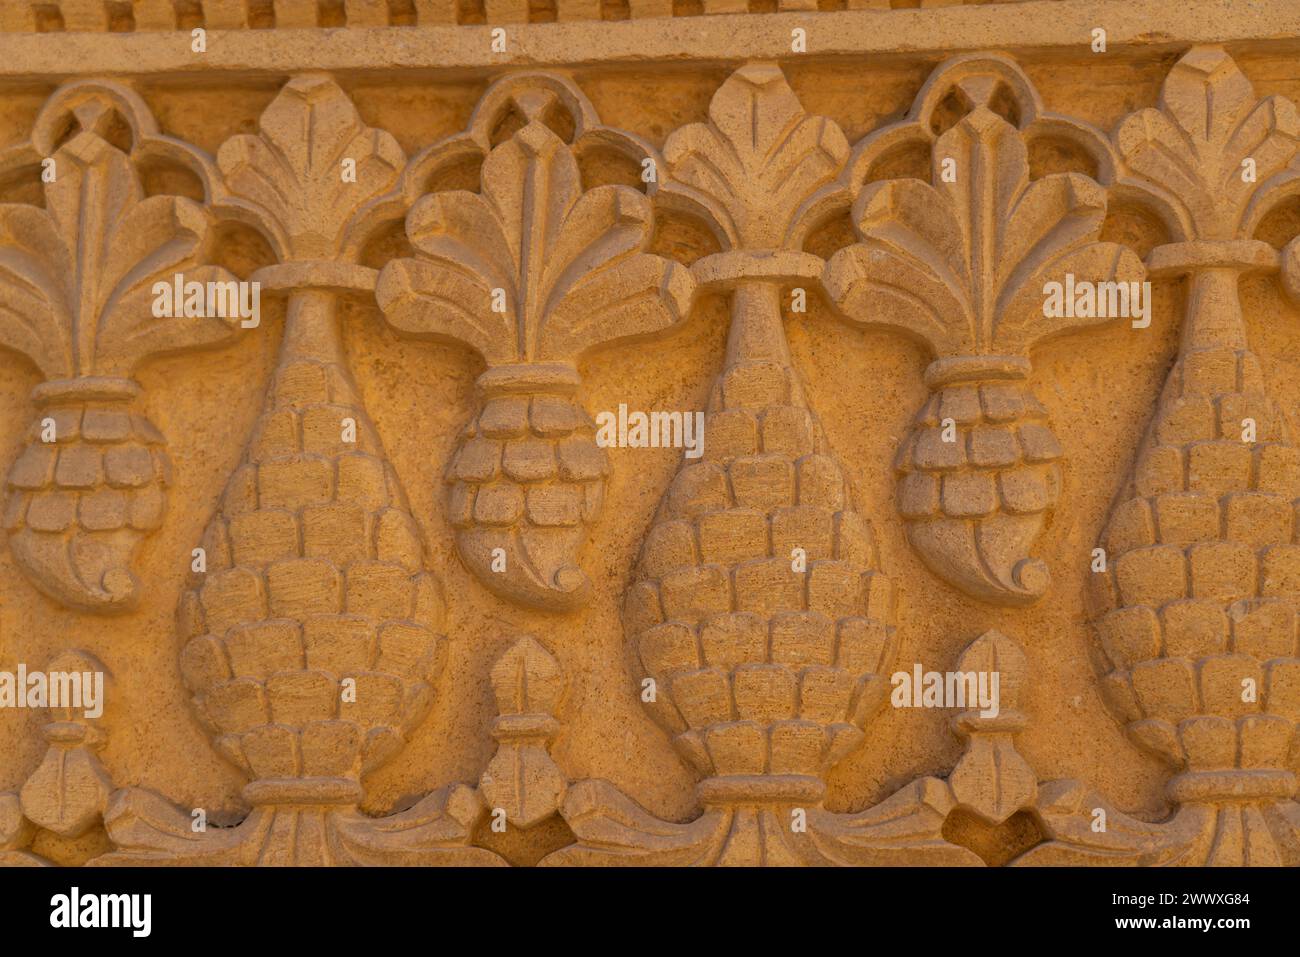 Dettagli dall'intaglio in un edificio in pietra arenaria dorata a Jaisalmer, la città dorata del Rajasthan Foto Stock